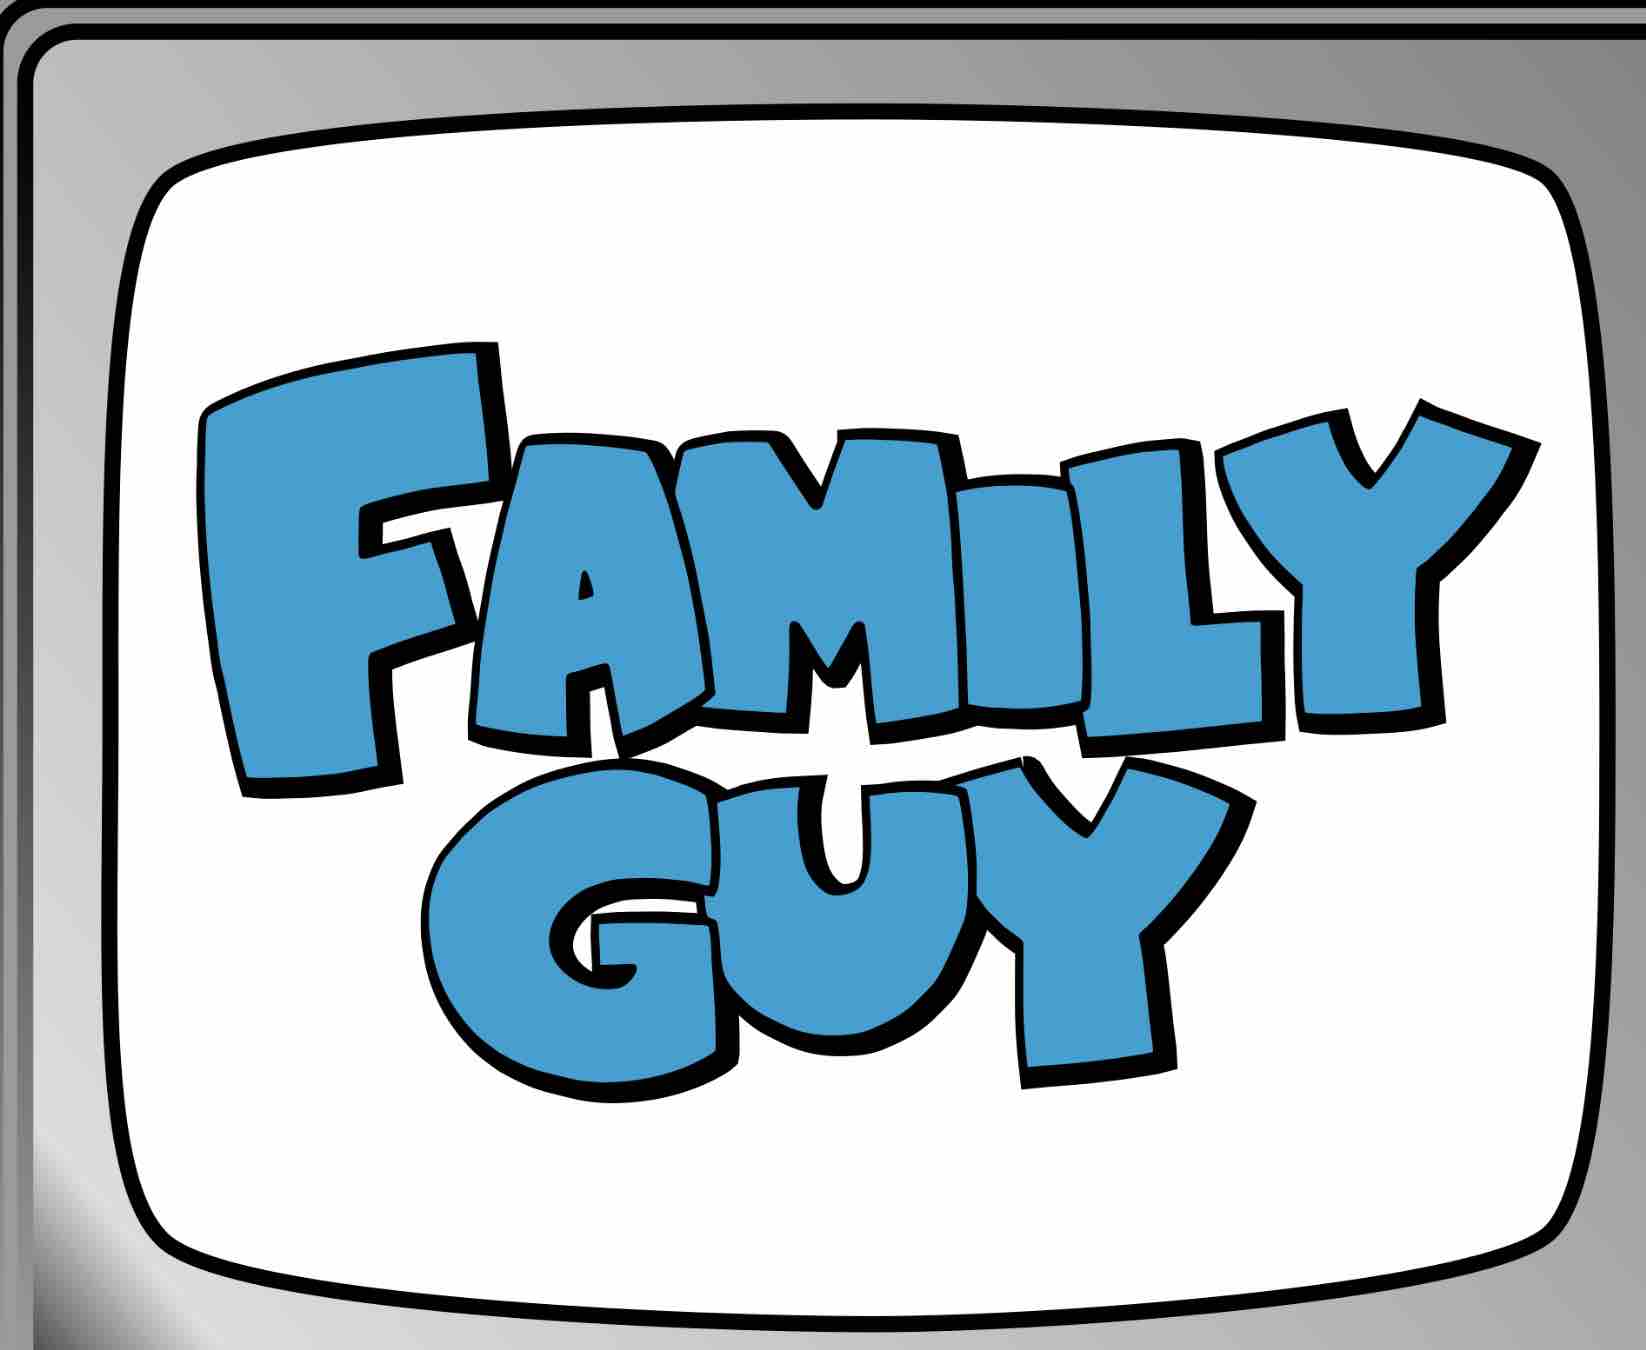 family guy